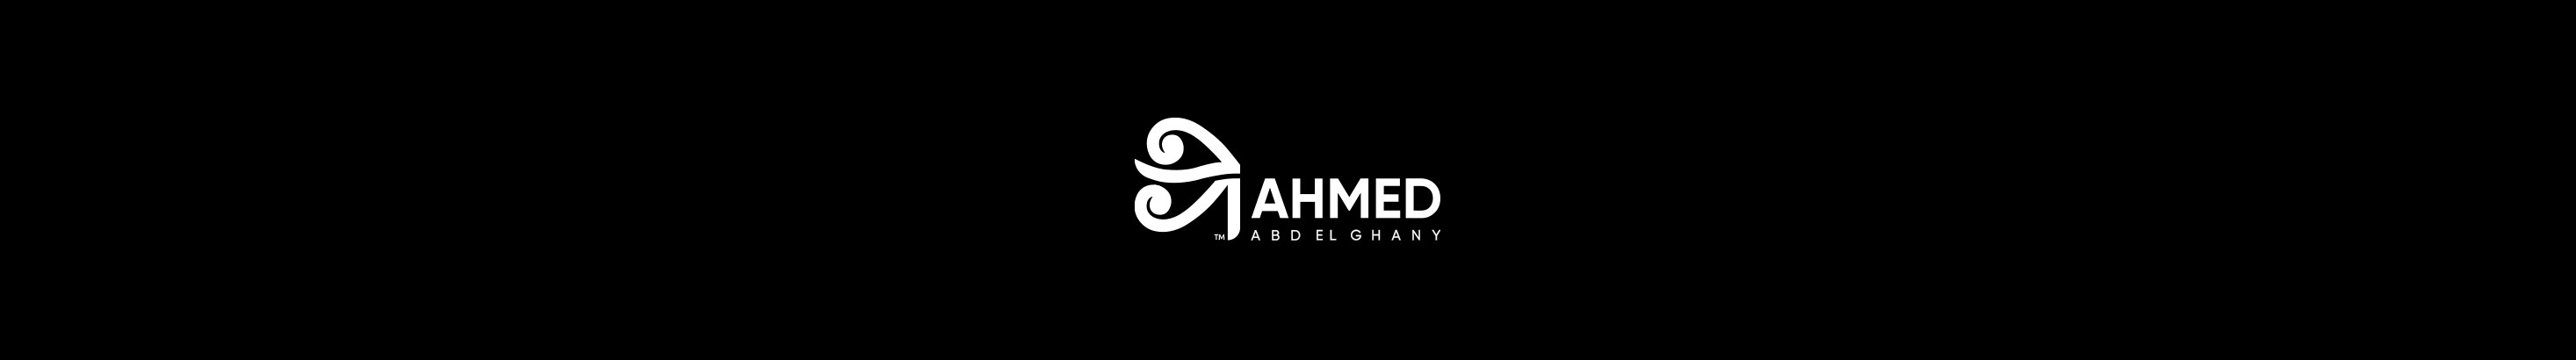 Баннер профиля Ahmed Abd El Ghany